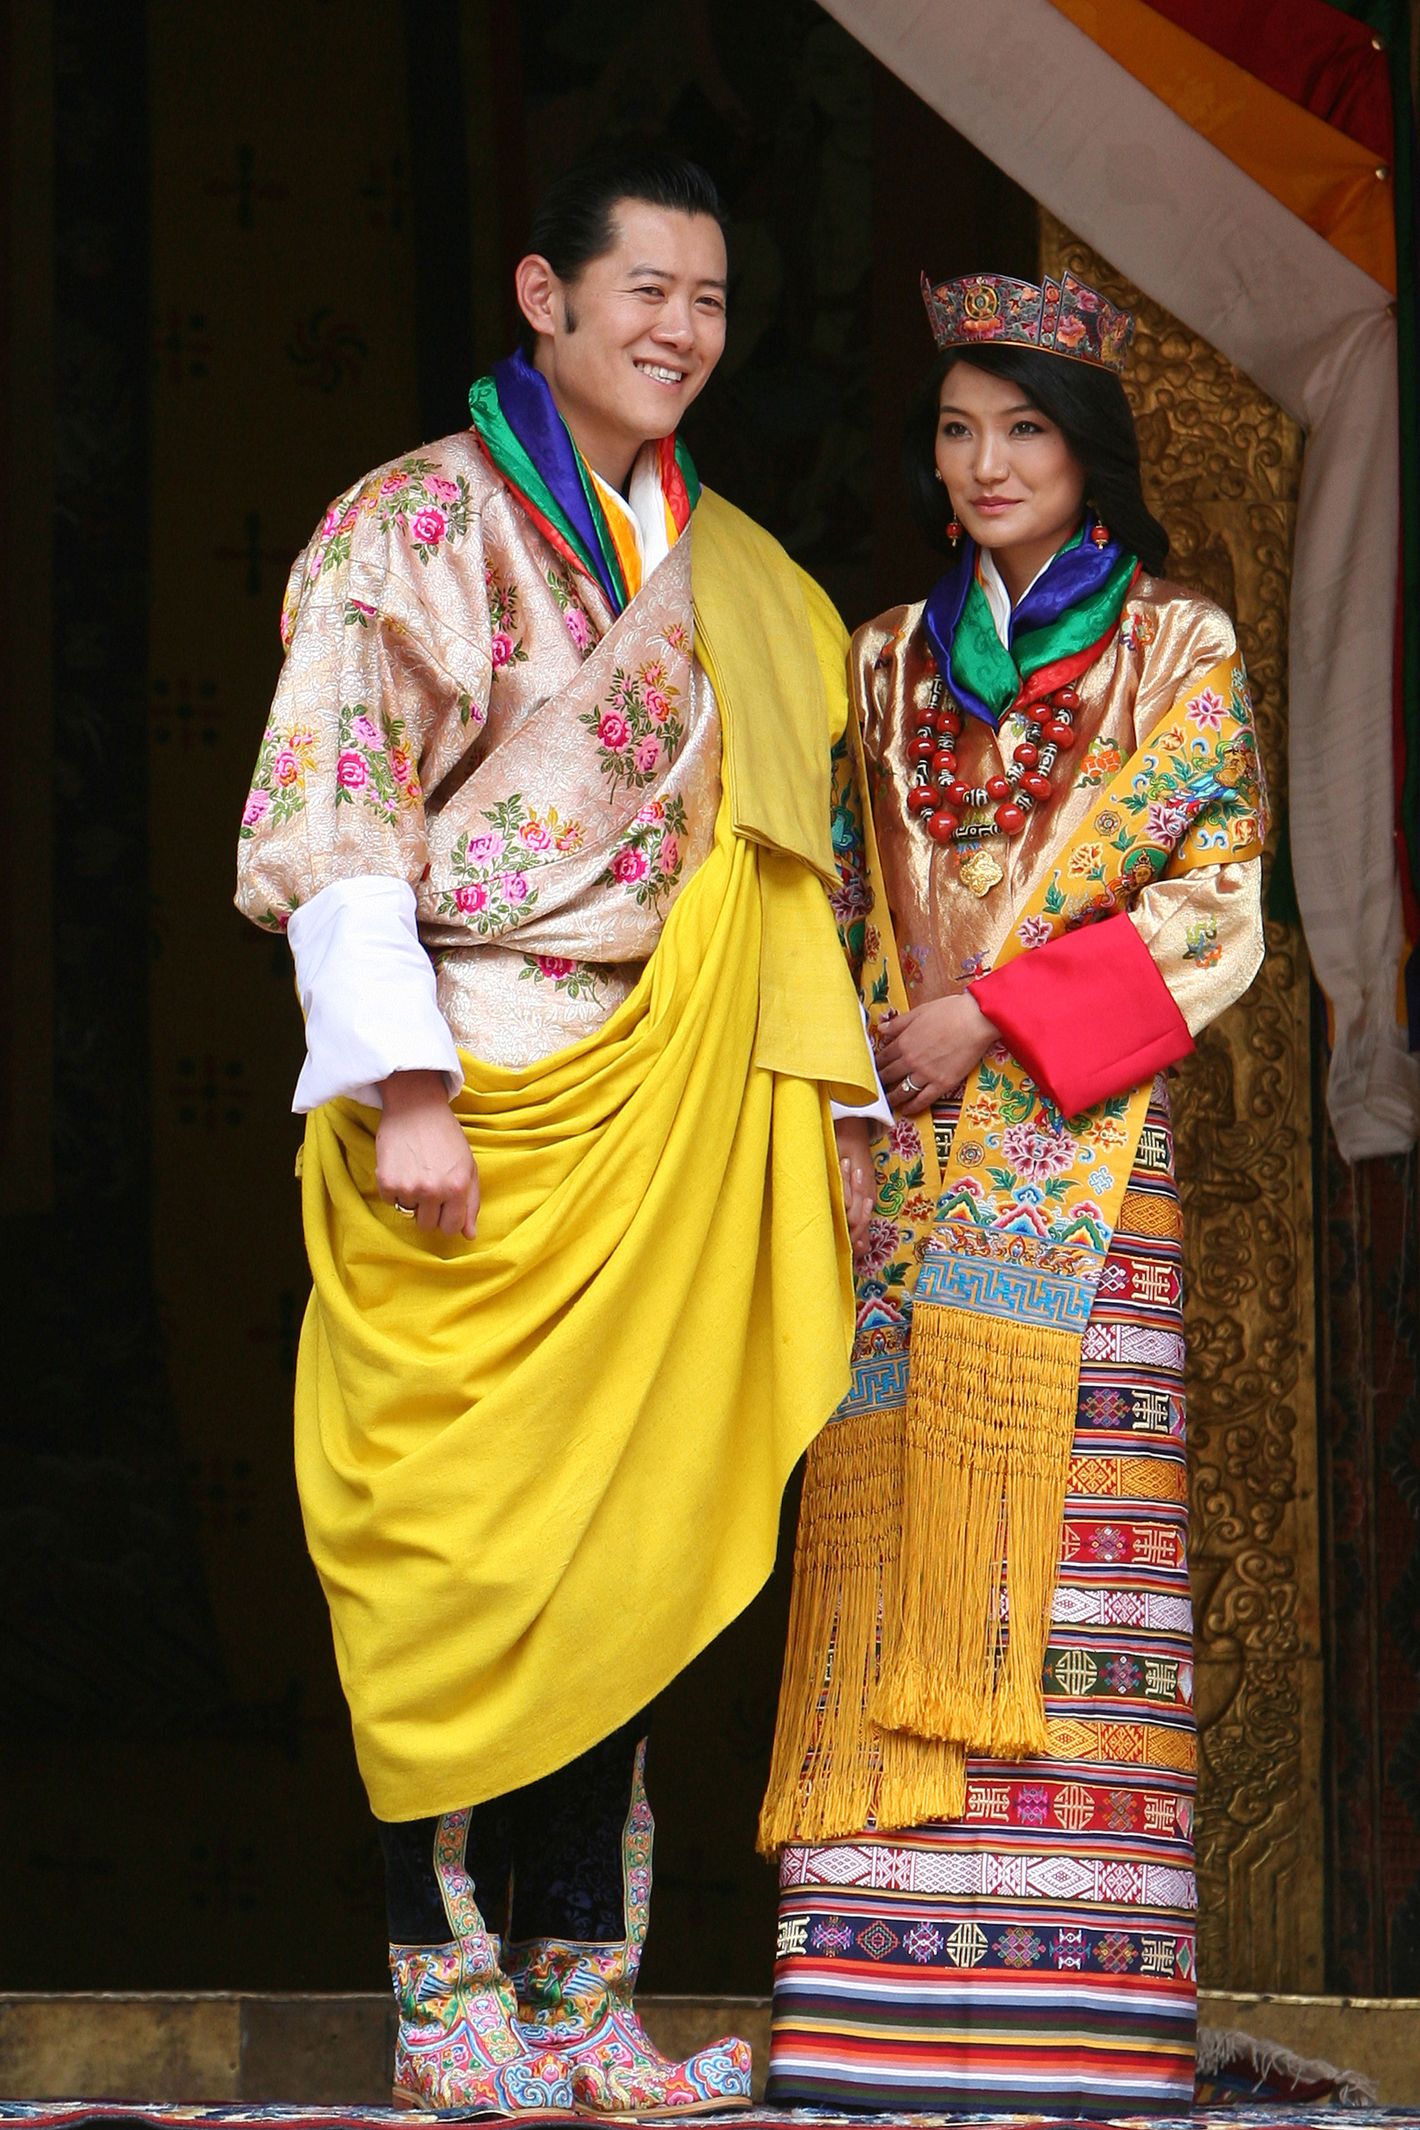 Tibetan wedding ceremony-Tibetan marriage customs-Tibet festival tours